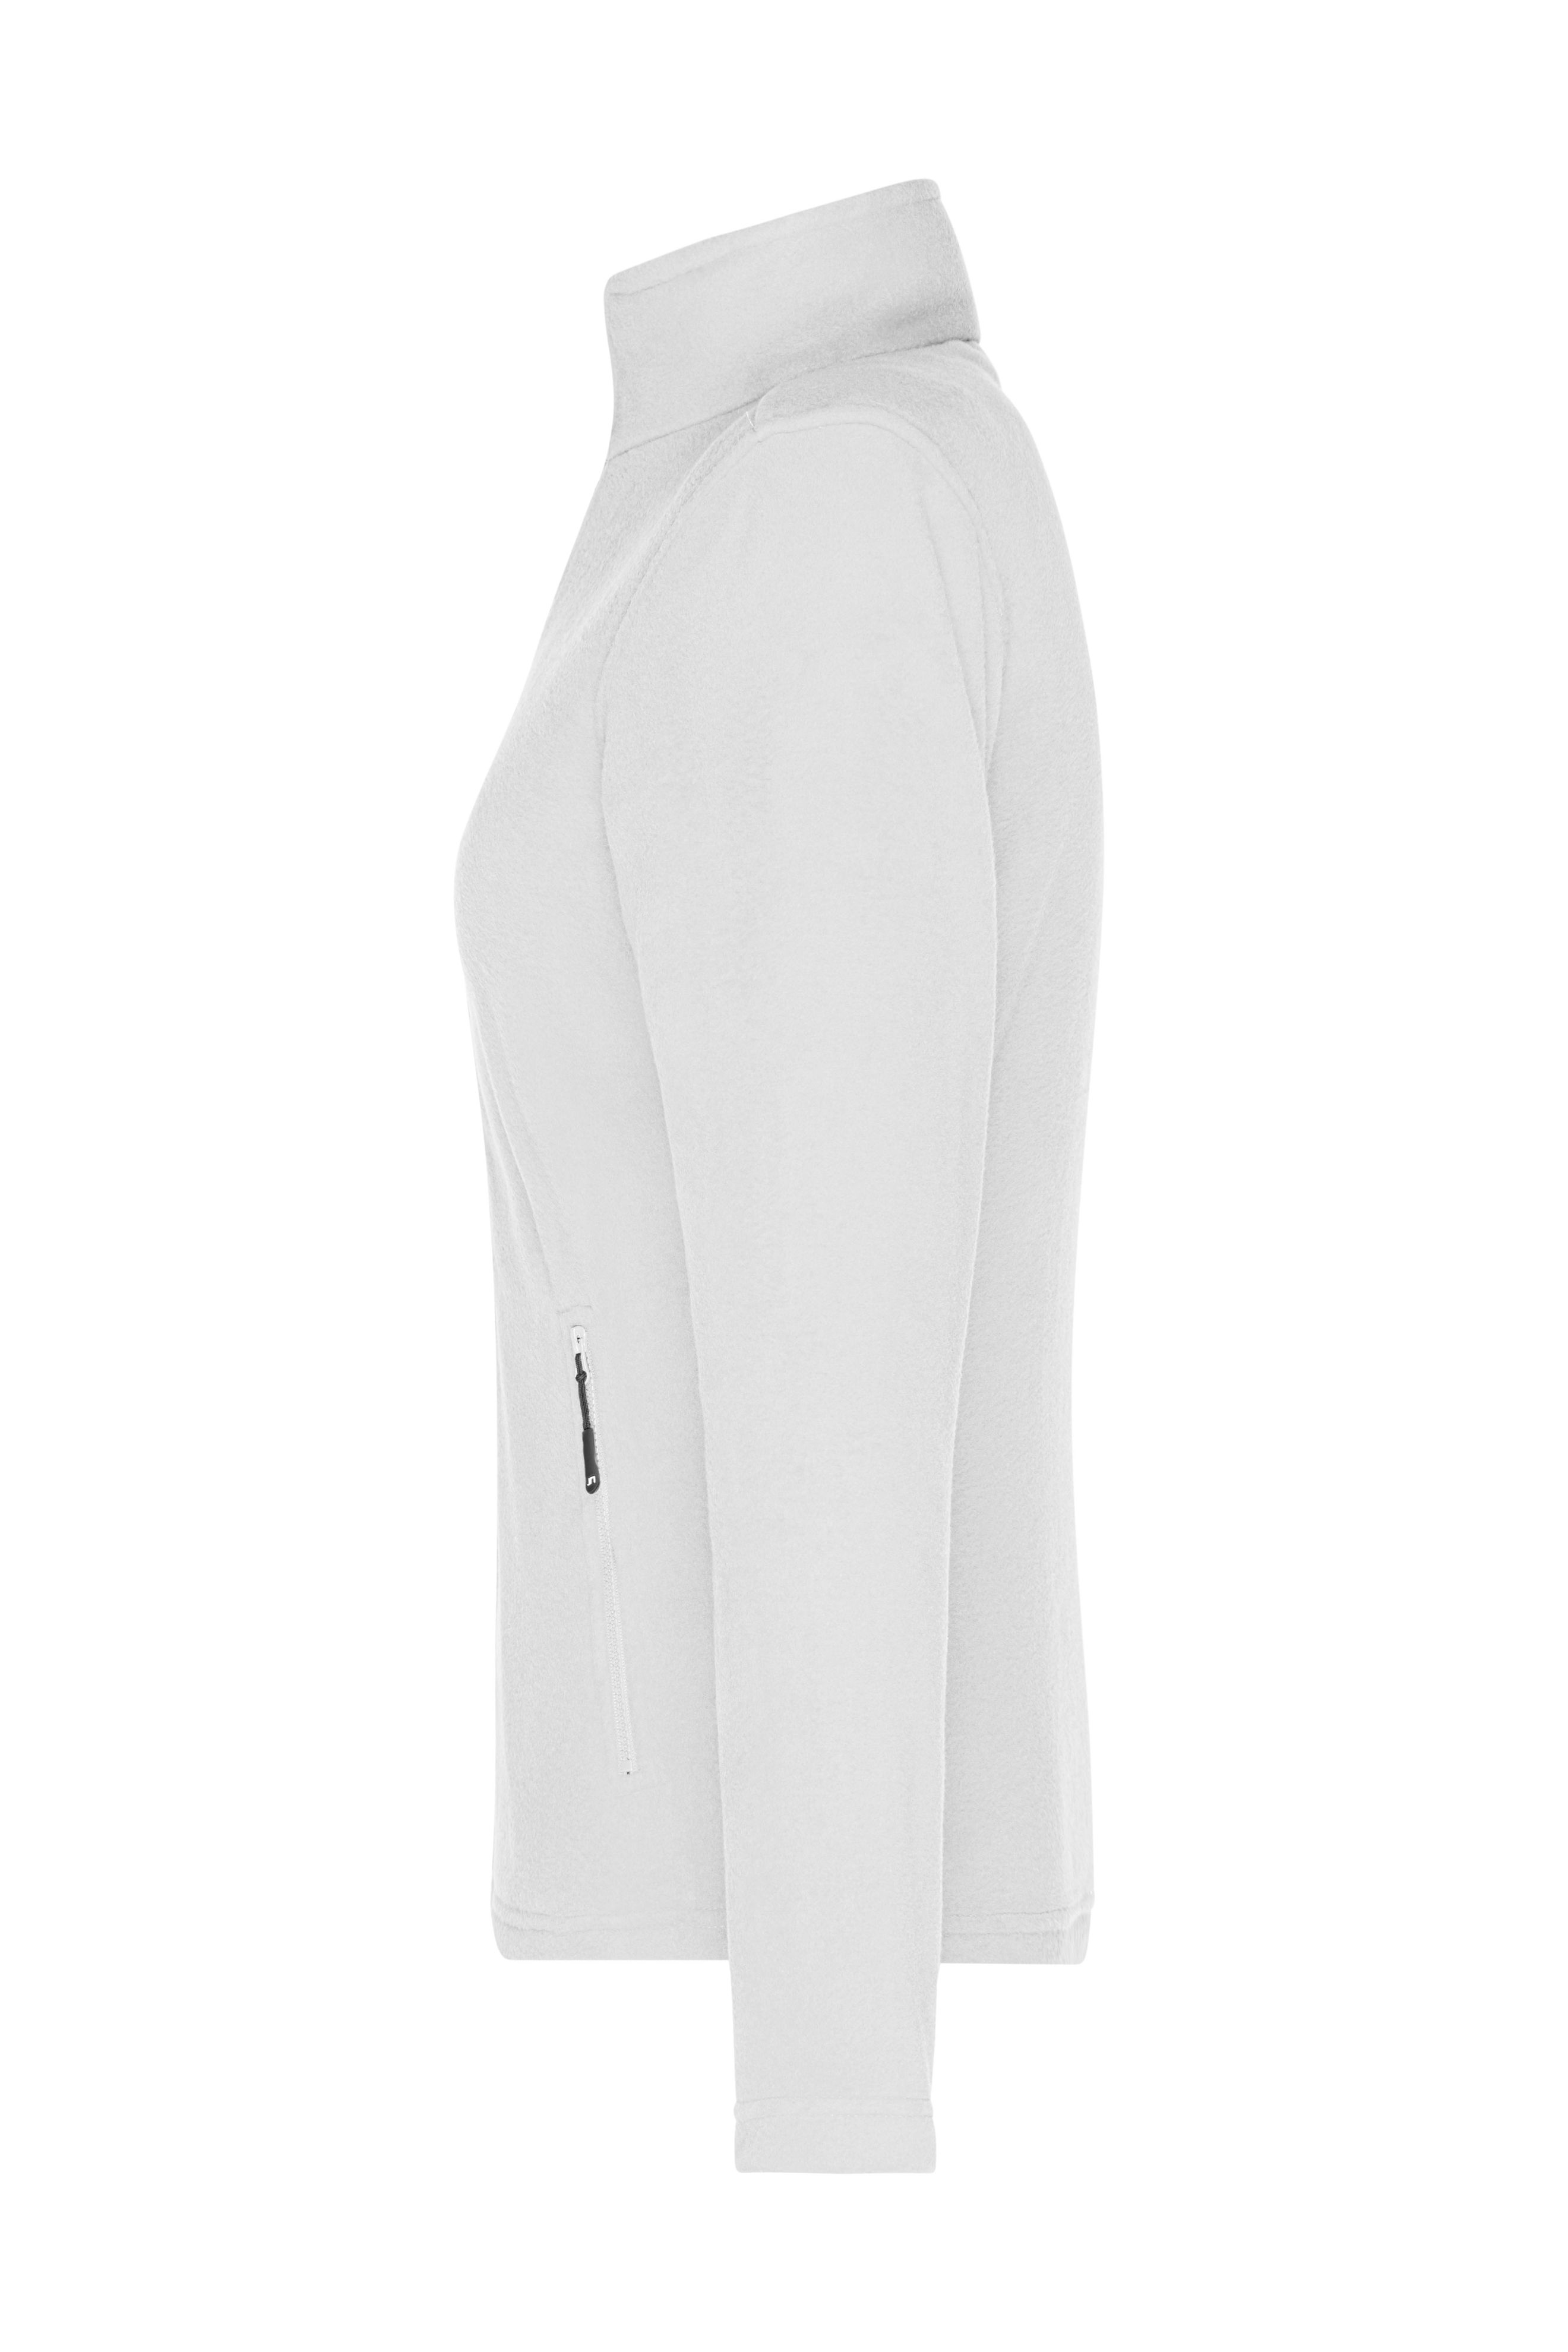 Ladies' Fleece Jacket JN781 Fleece Jacke mit Stehkragen im klassischen Design